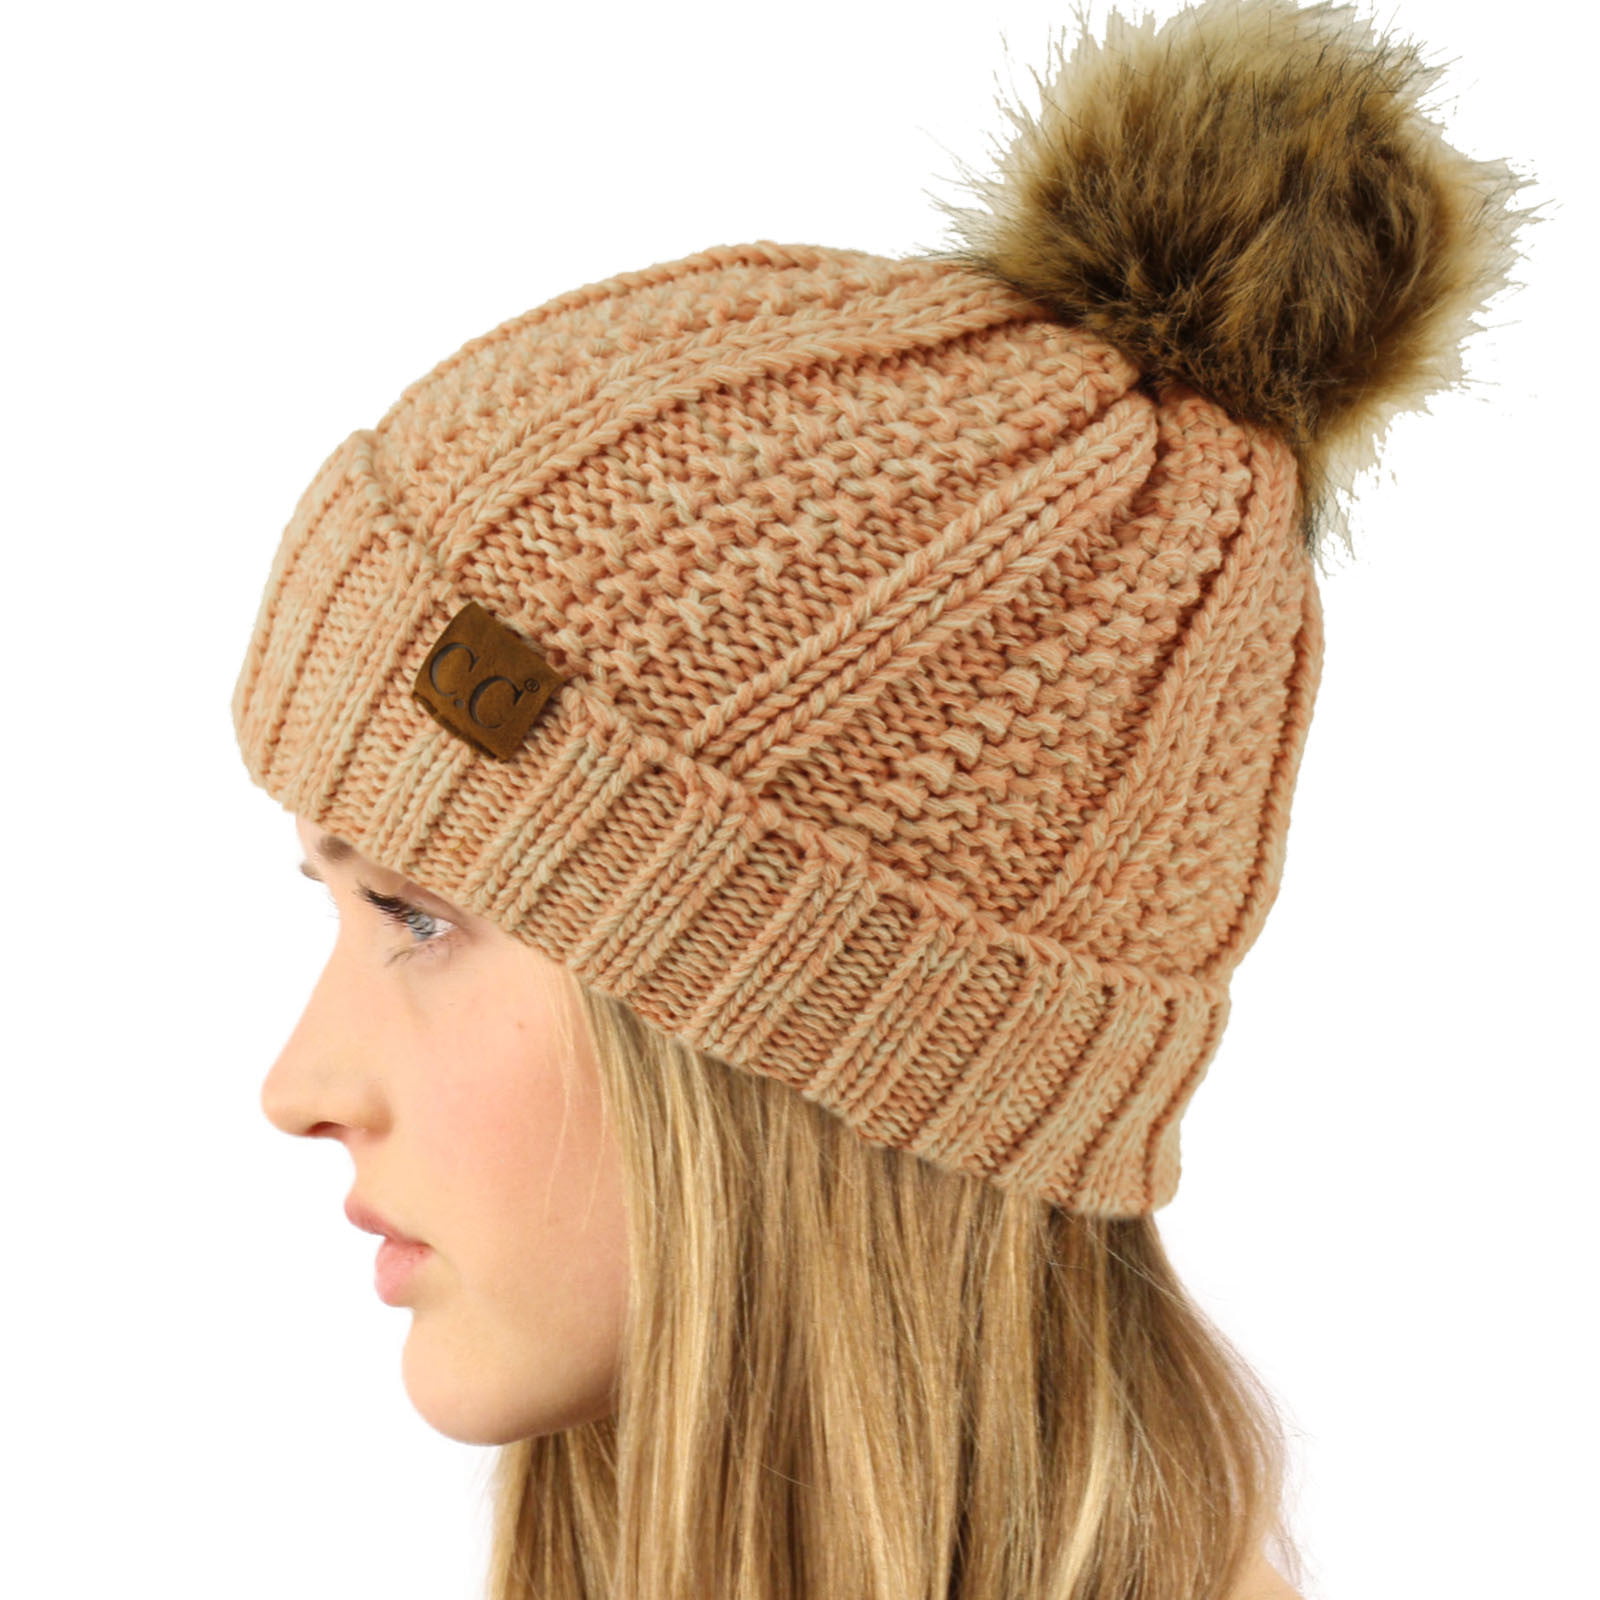 C.C Winter Sherpa Cap Hat Chunky Pink) (Mix Knit Beanie Pom Lined Fleeced Stretch Pom